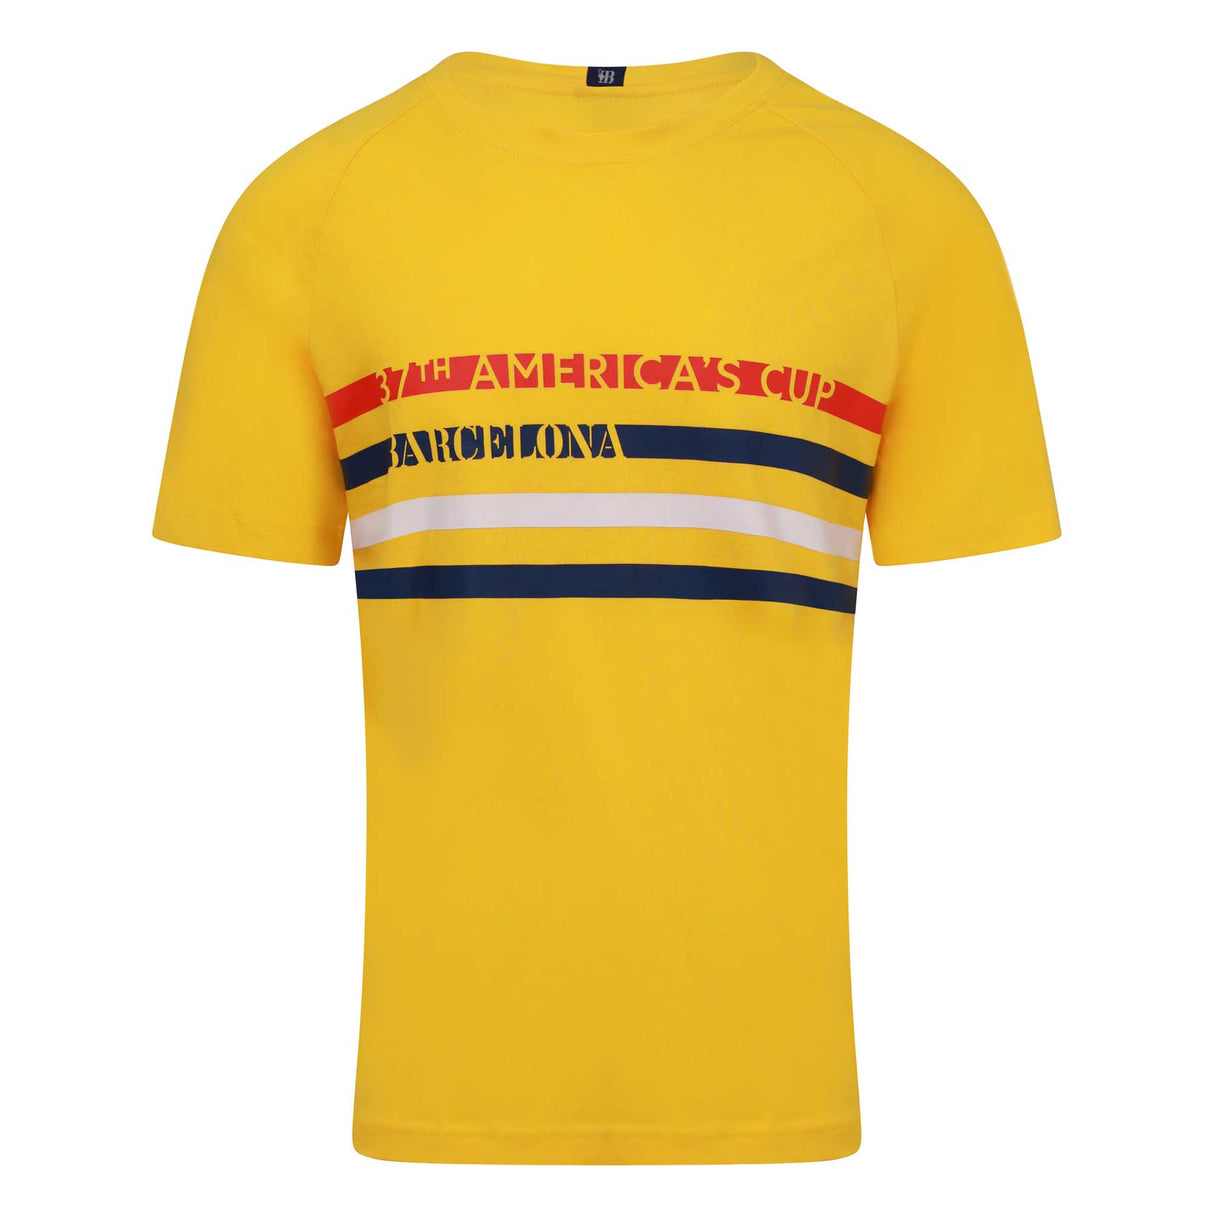 37th America's Cup Men's Raglan T-Shirt